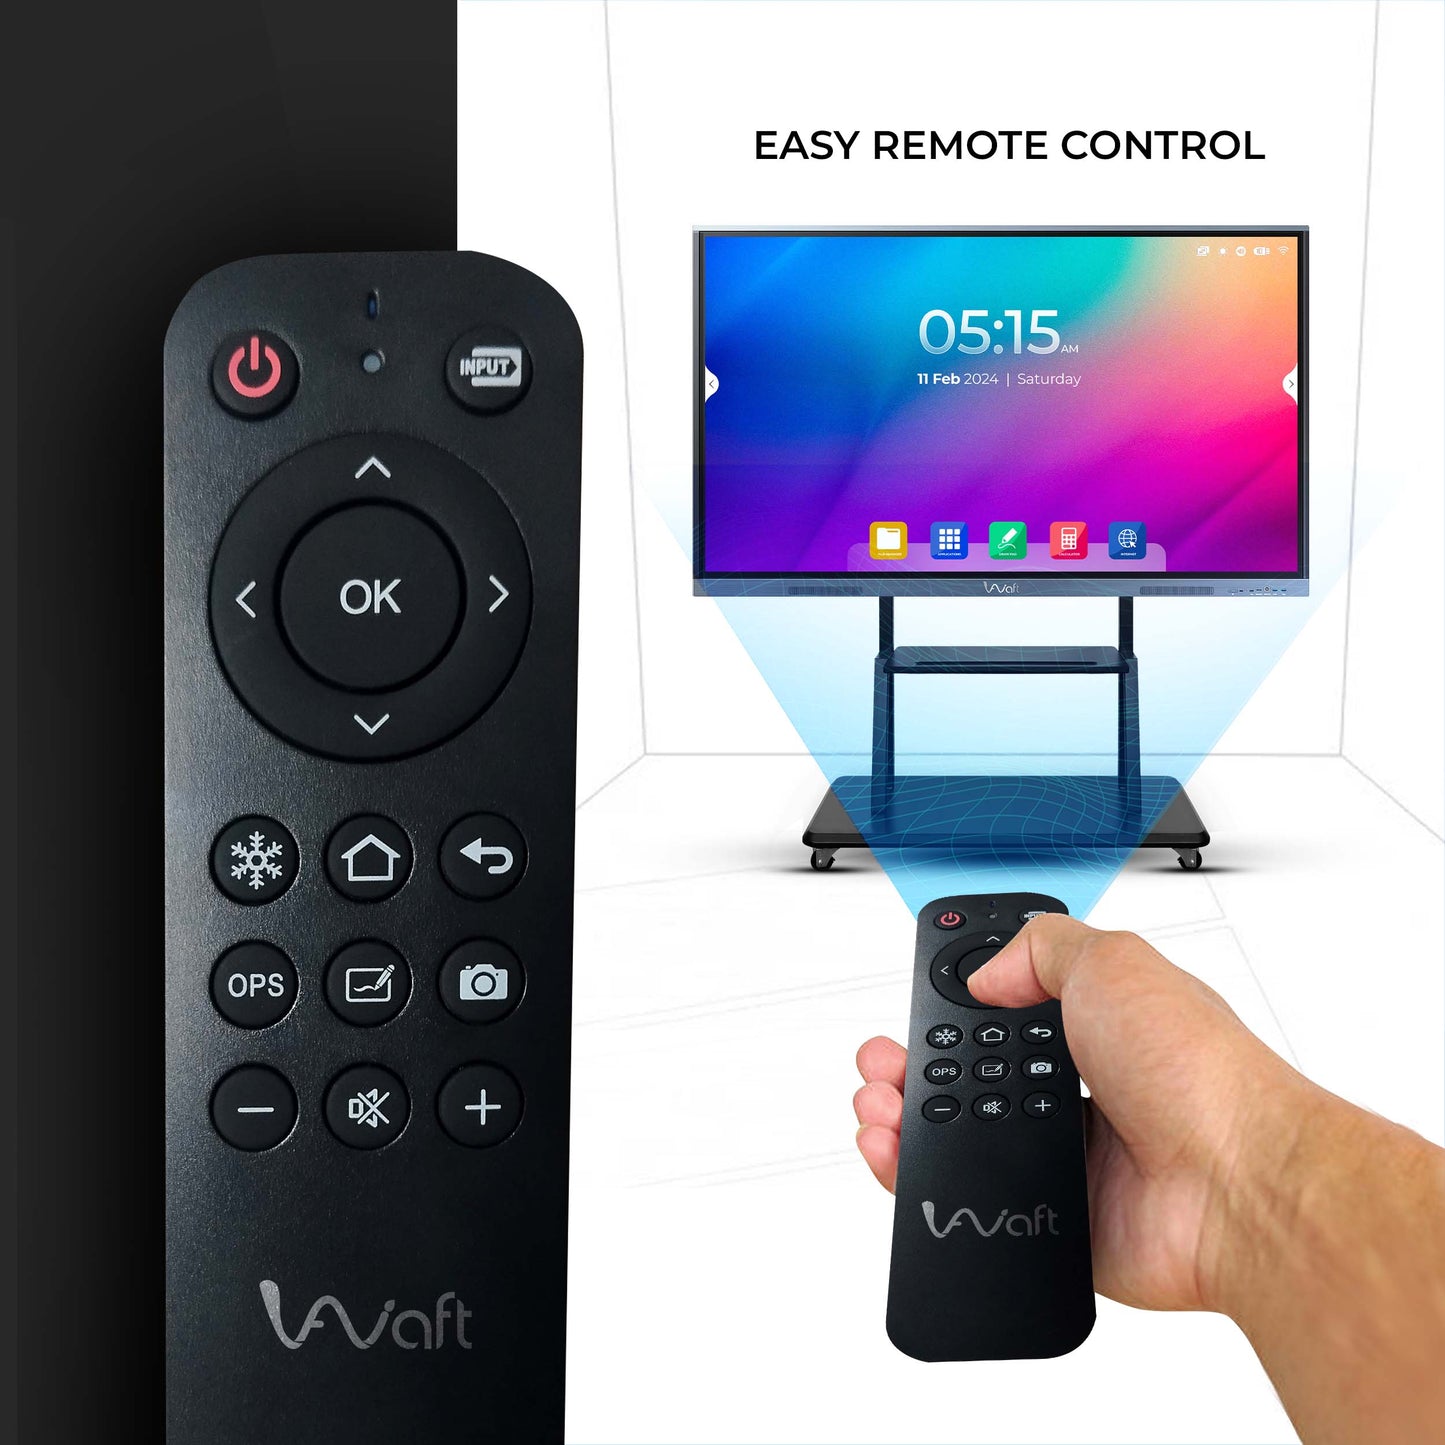 easy remote control